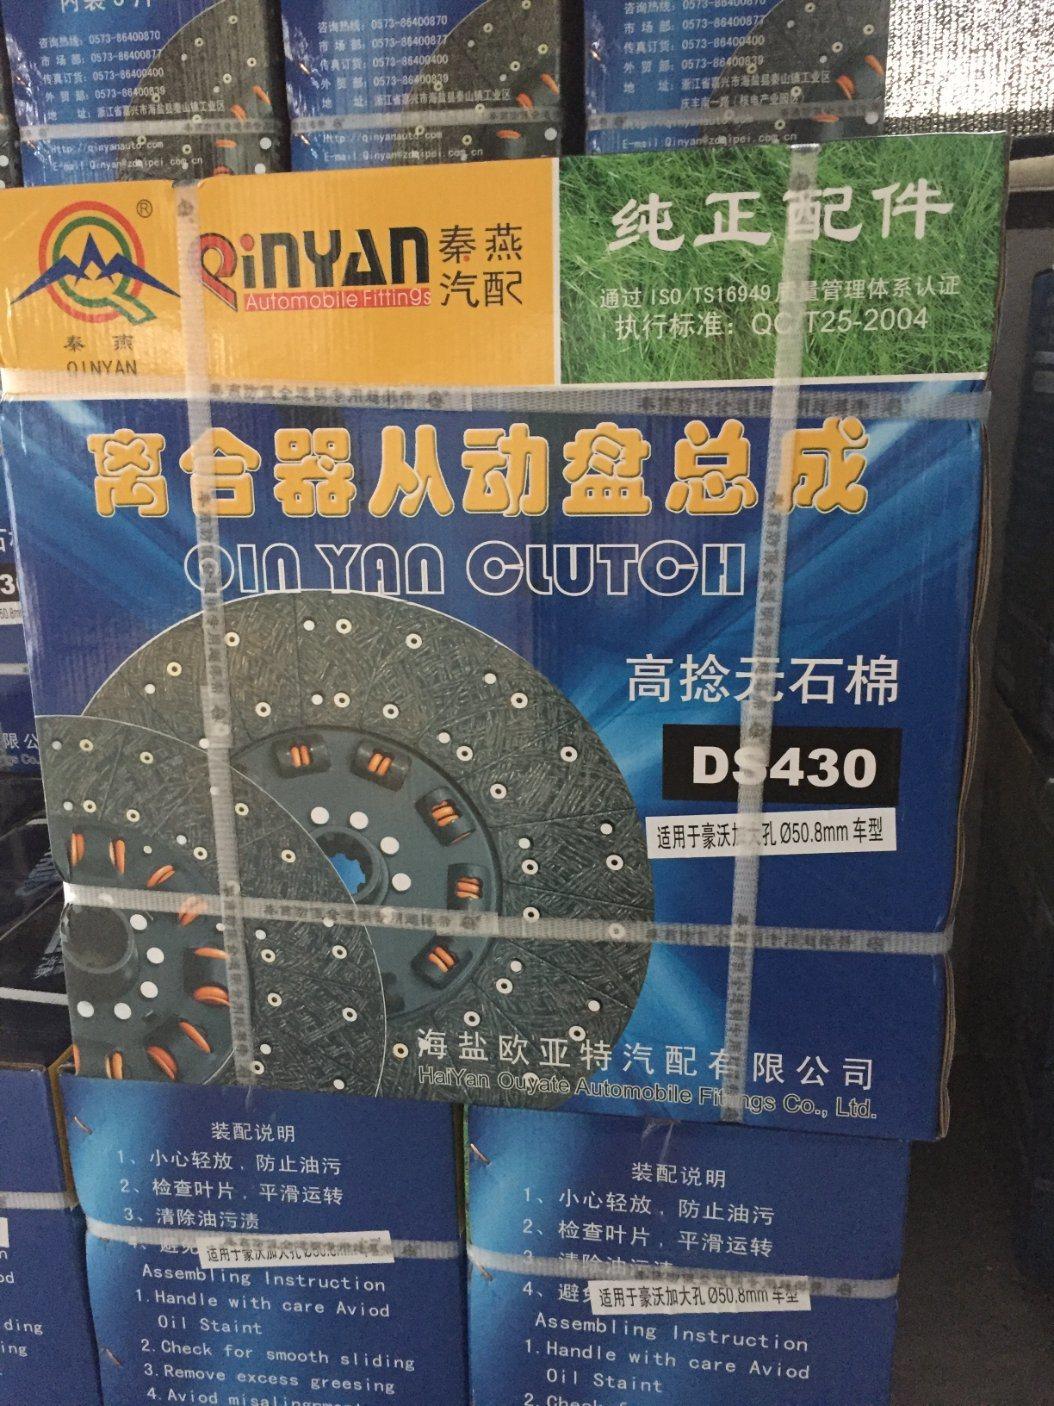 *Qinyan HOWO 430 Reverse-Pulling Clutch